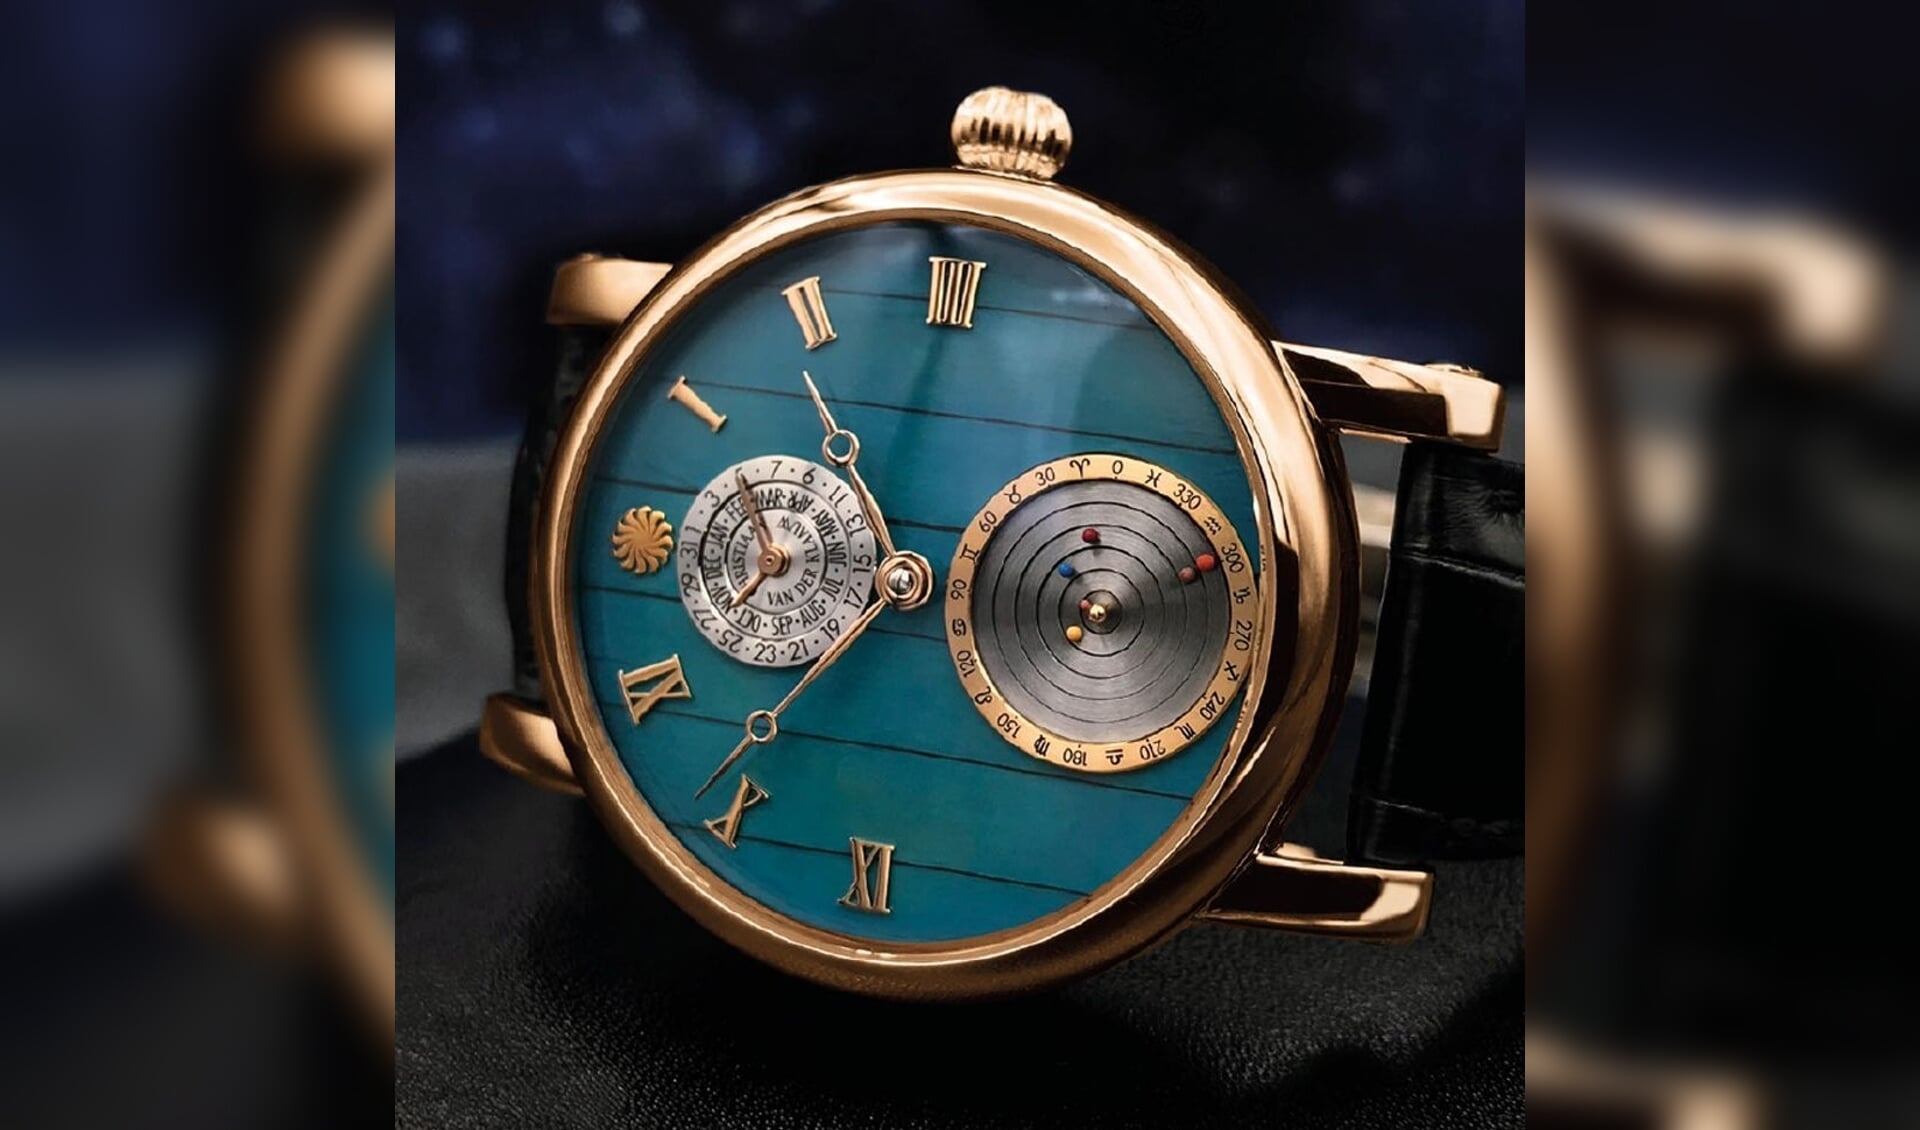 Het unieke horloge van het Planetarium Eise Eisinga geeft de omwentelingen van de aarde en de planeten aan. (eigen foto)